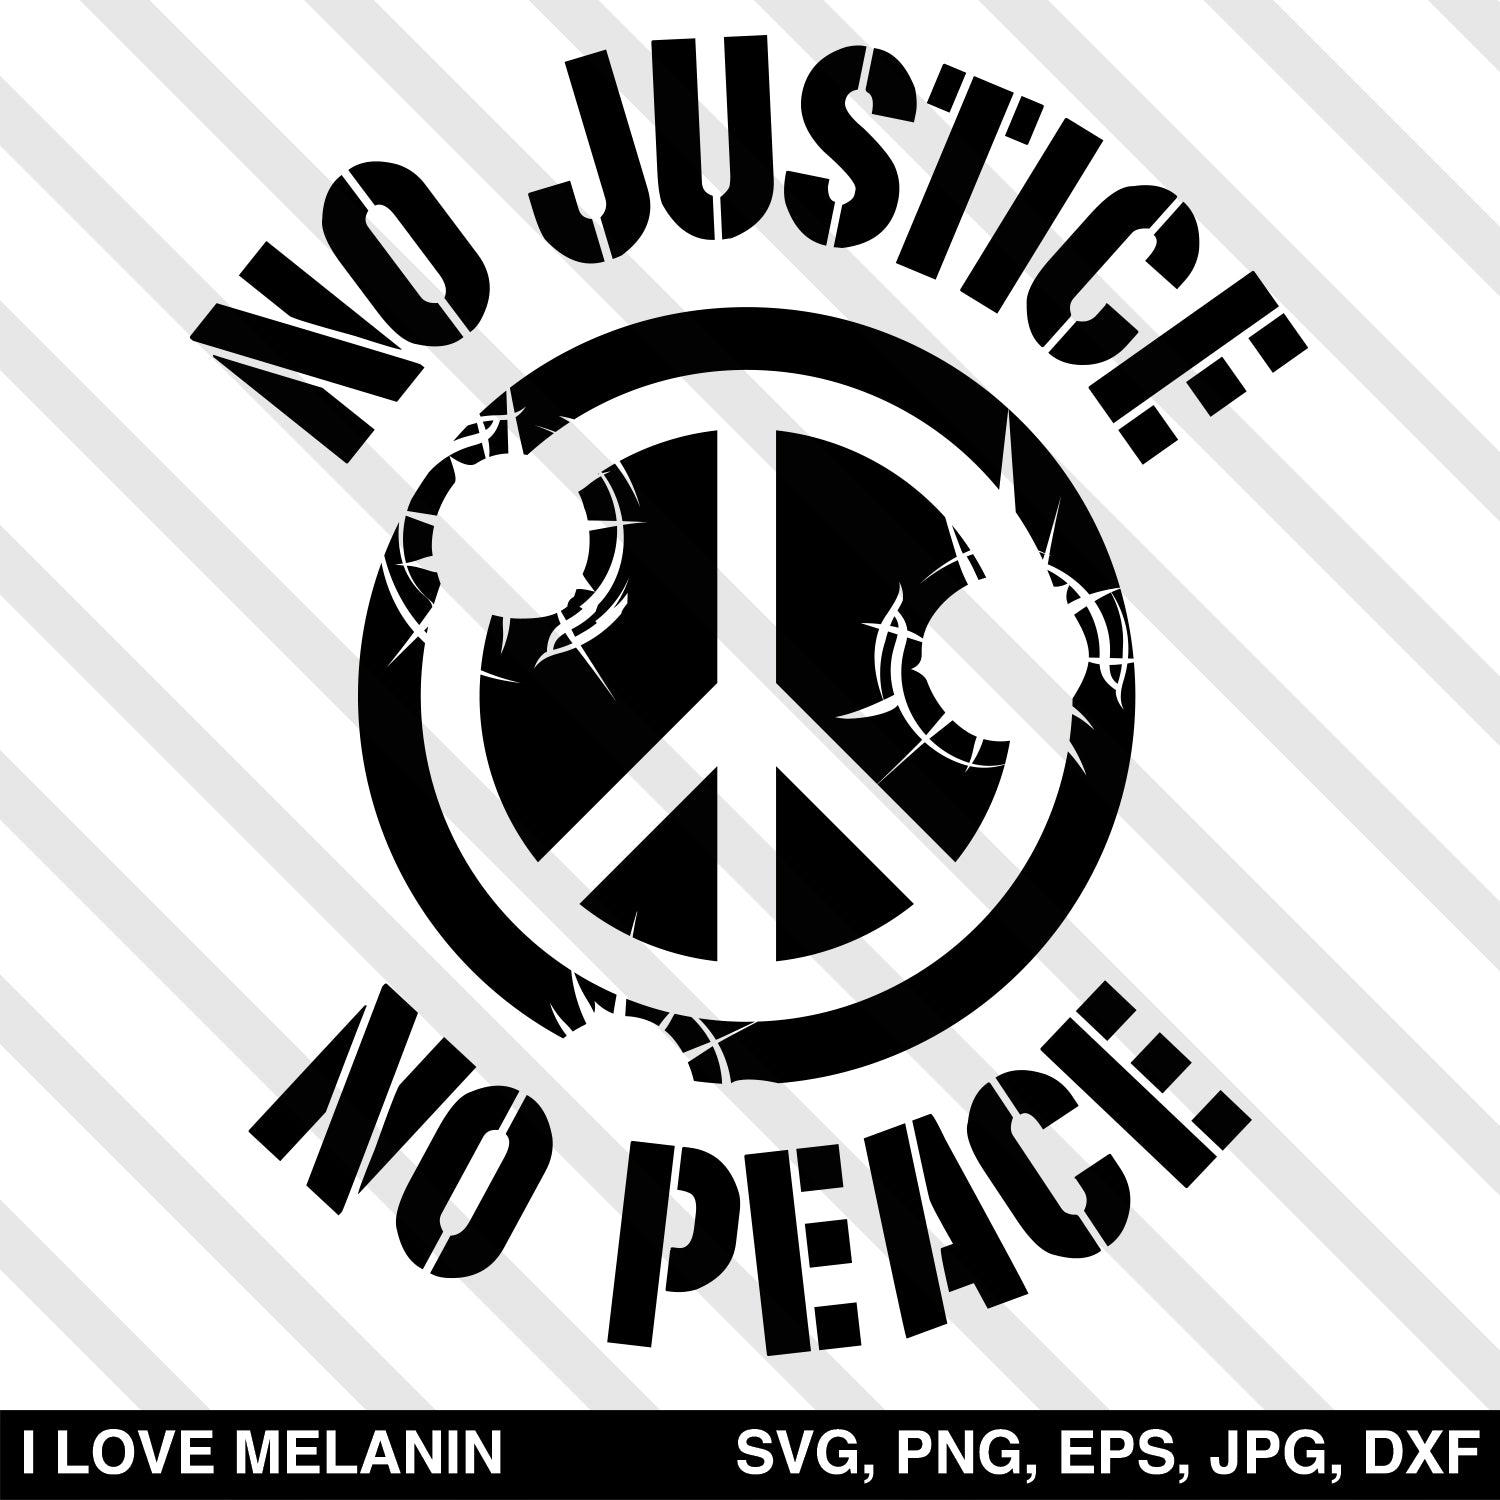 No Justice No Peace SVG